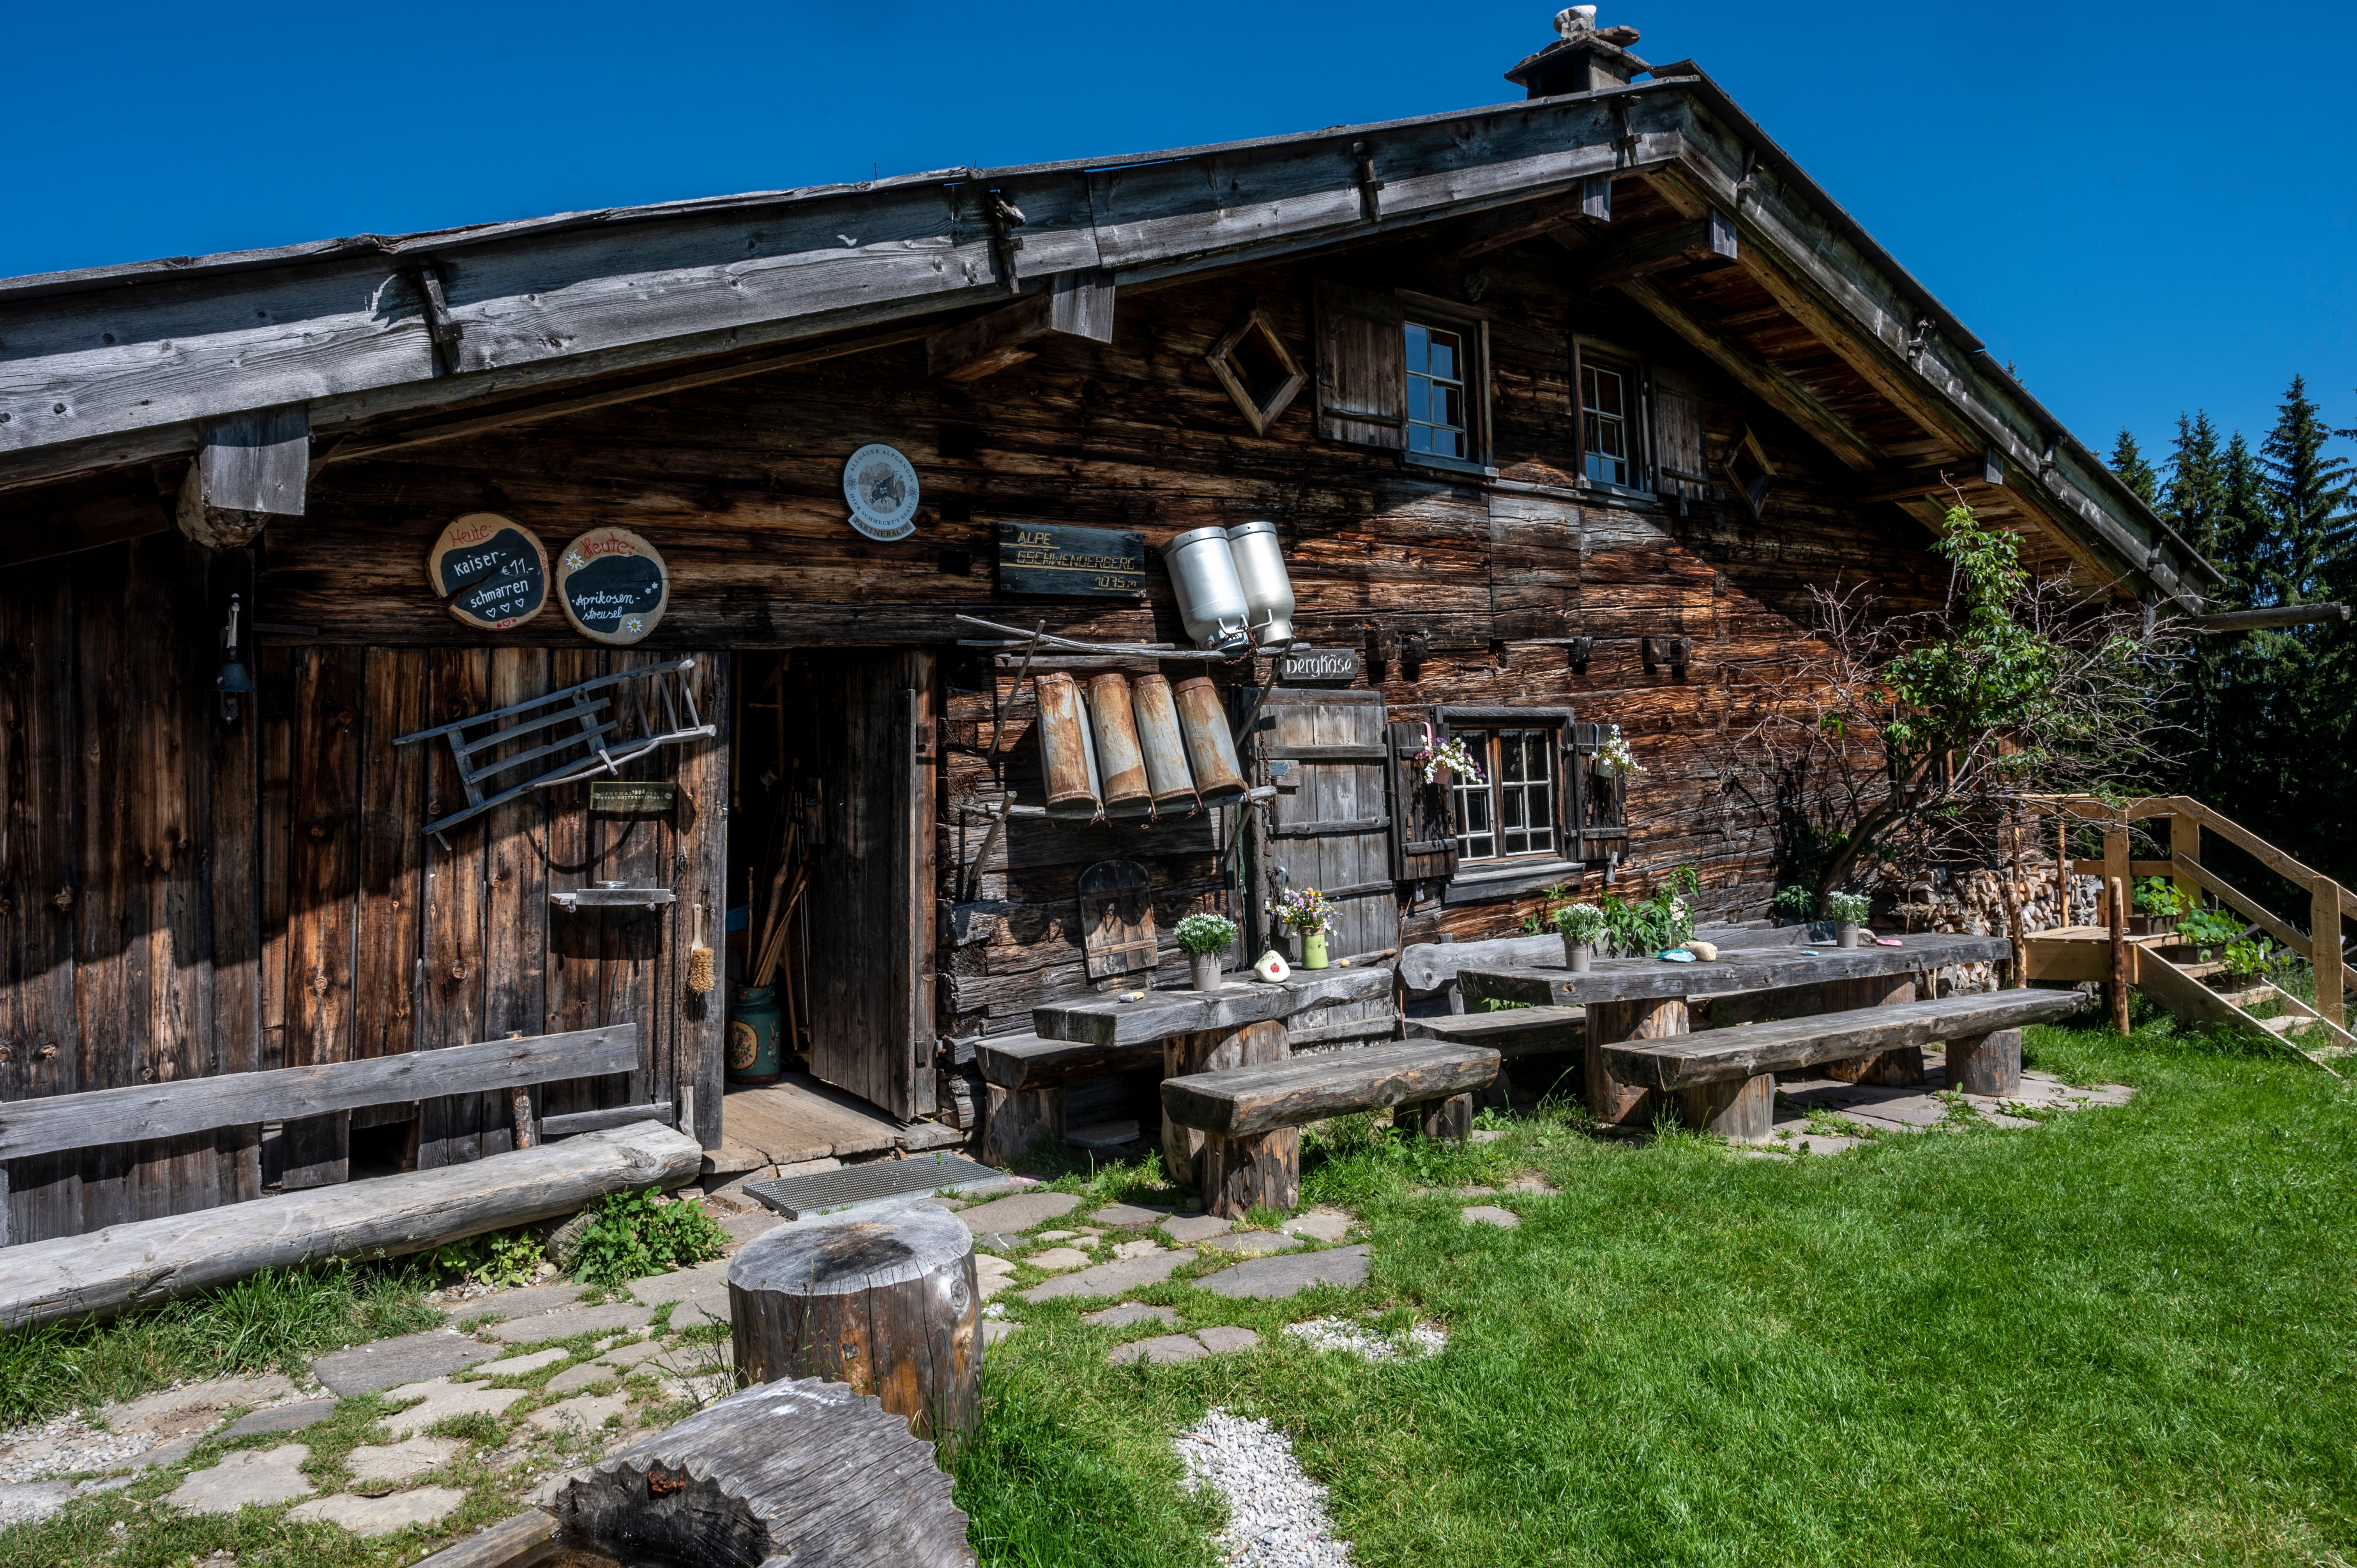 Die Alpe Gschwender Berg oberhalb von Immenstadt ist über 300 Jahre alt und eine der schönsten Alpen im Allgäu. In den Sommermonaten hat die Alpe täglich geöffnet. In den Wintermonaten hat die Alpe am Samstag und Sonntag geöffnet.